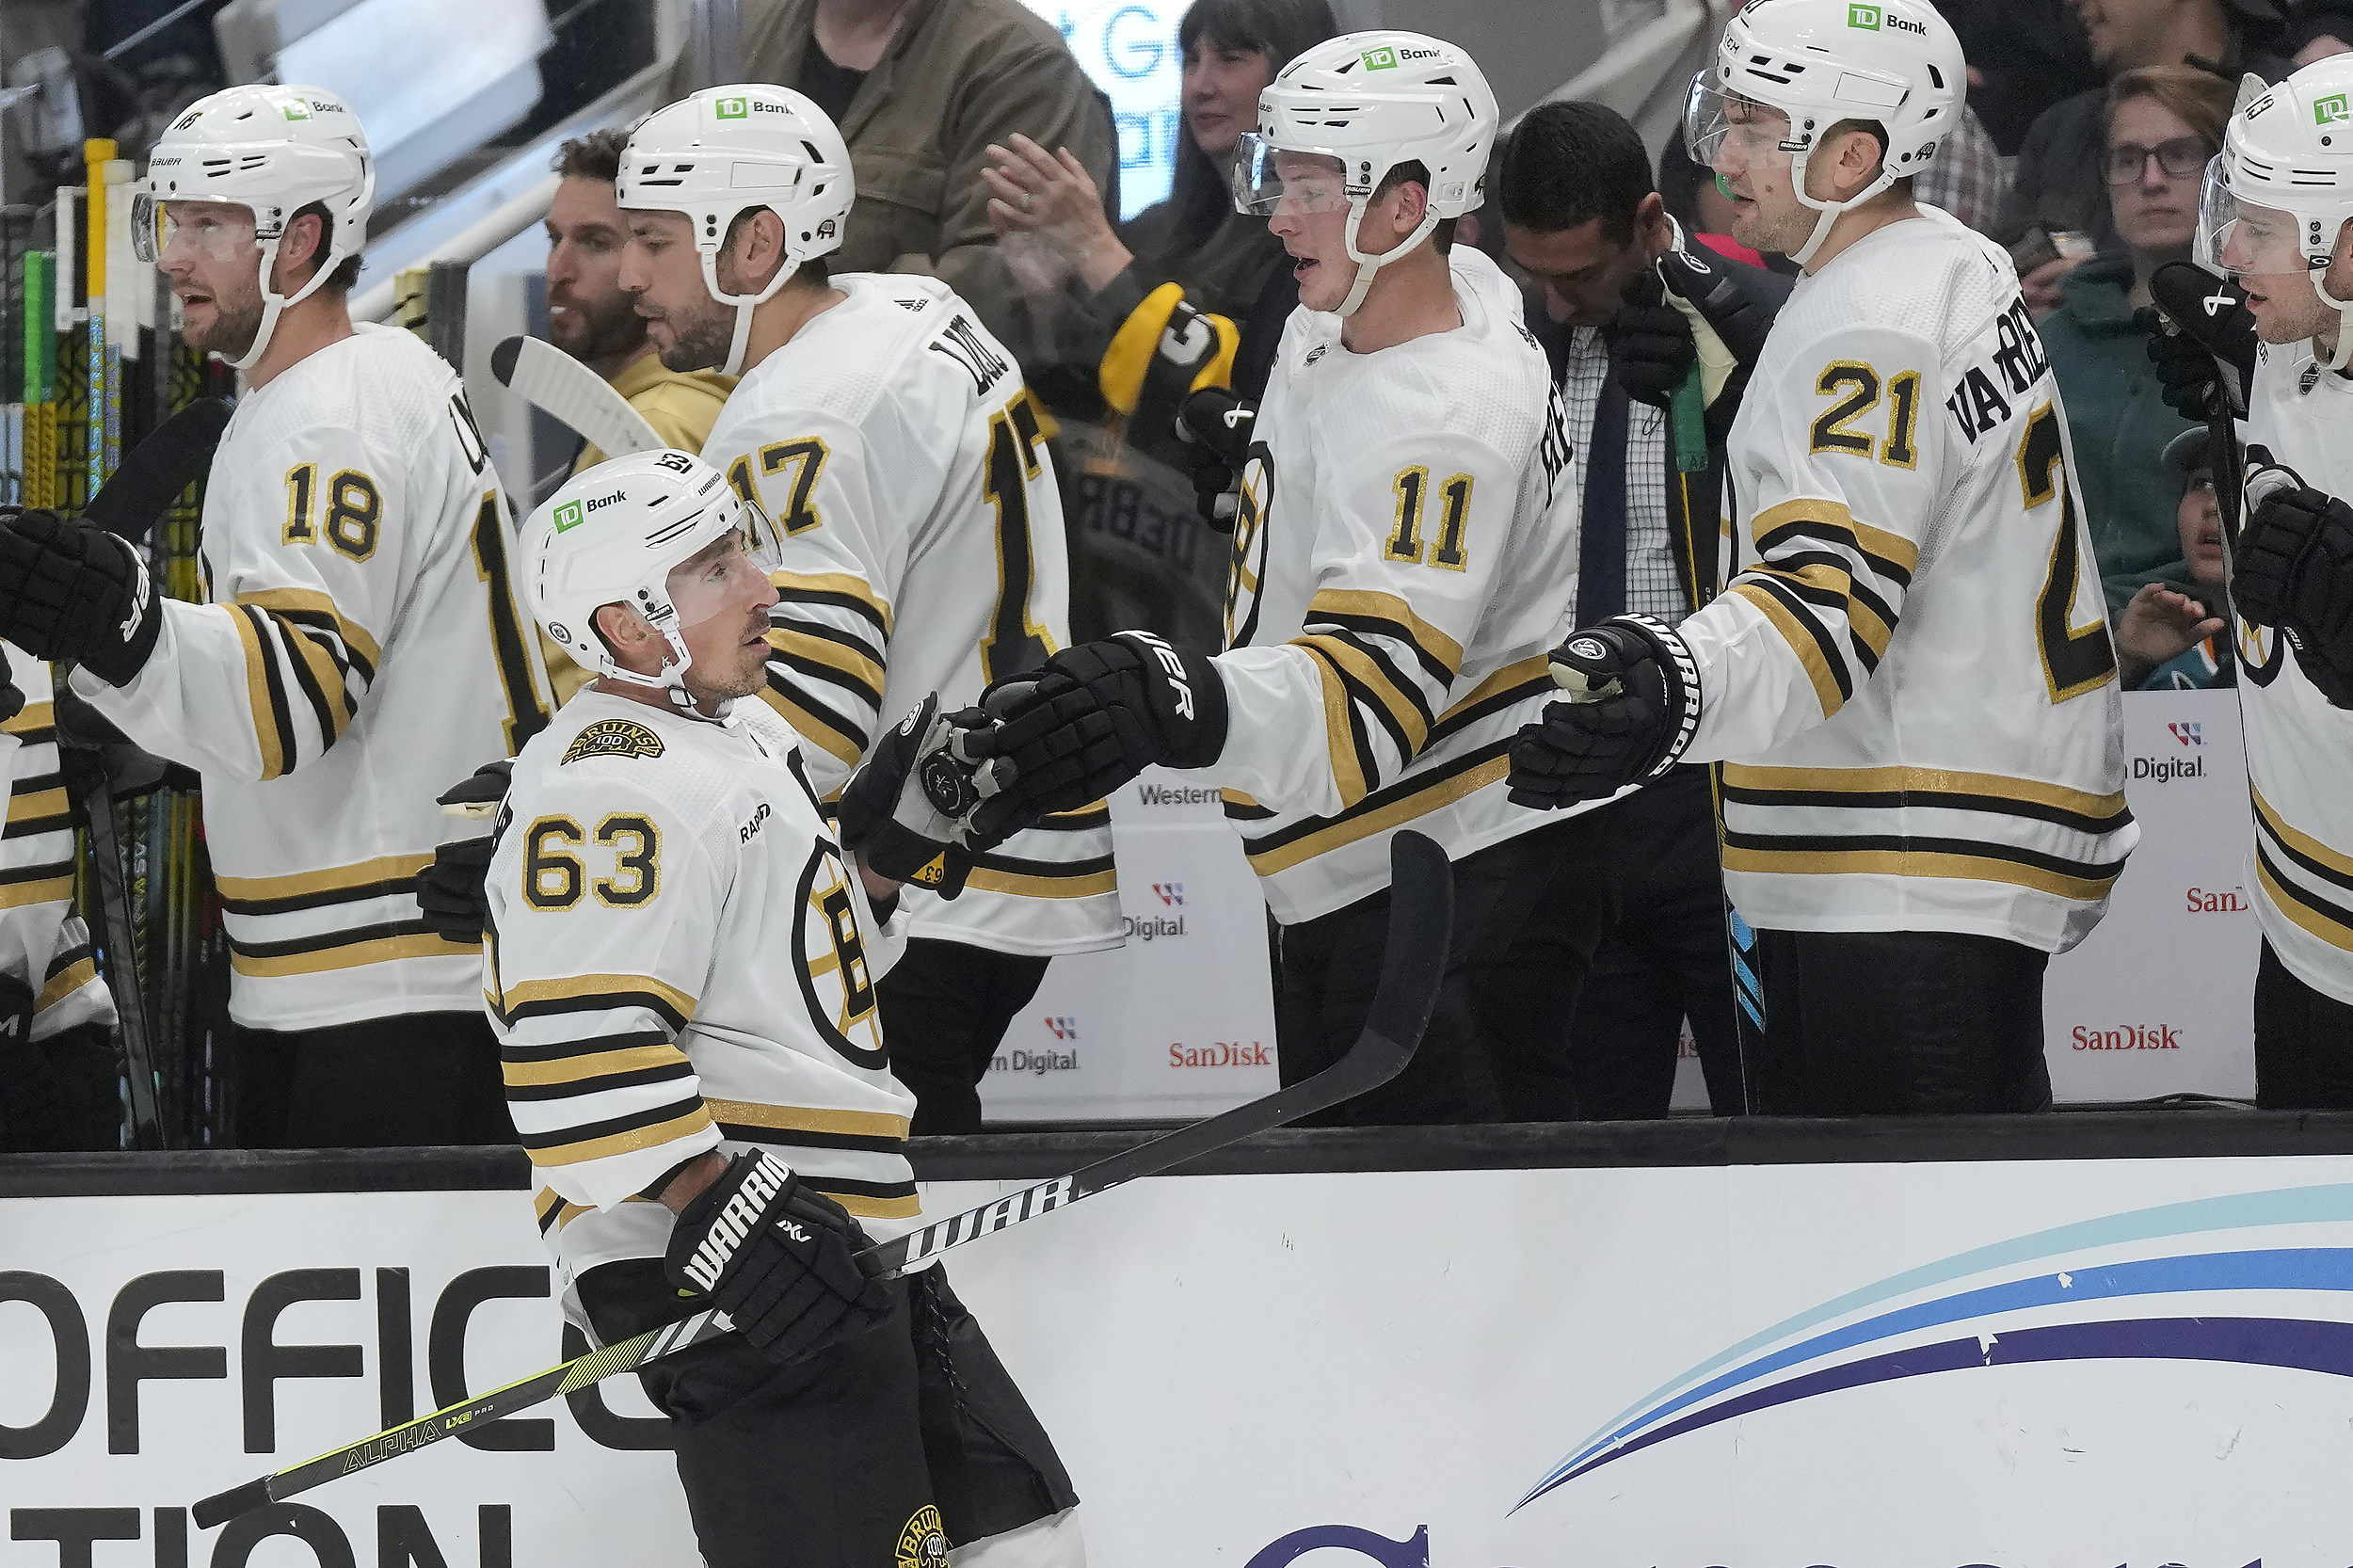 Rookie Bedard scores, but Pastrnak pots 2 to lead Bruins past Blackhawks 3-1